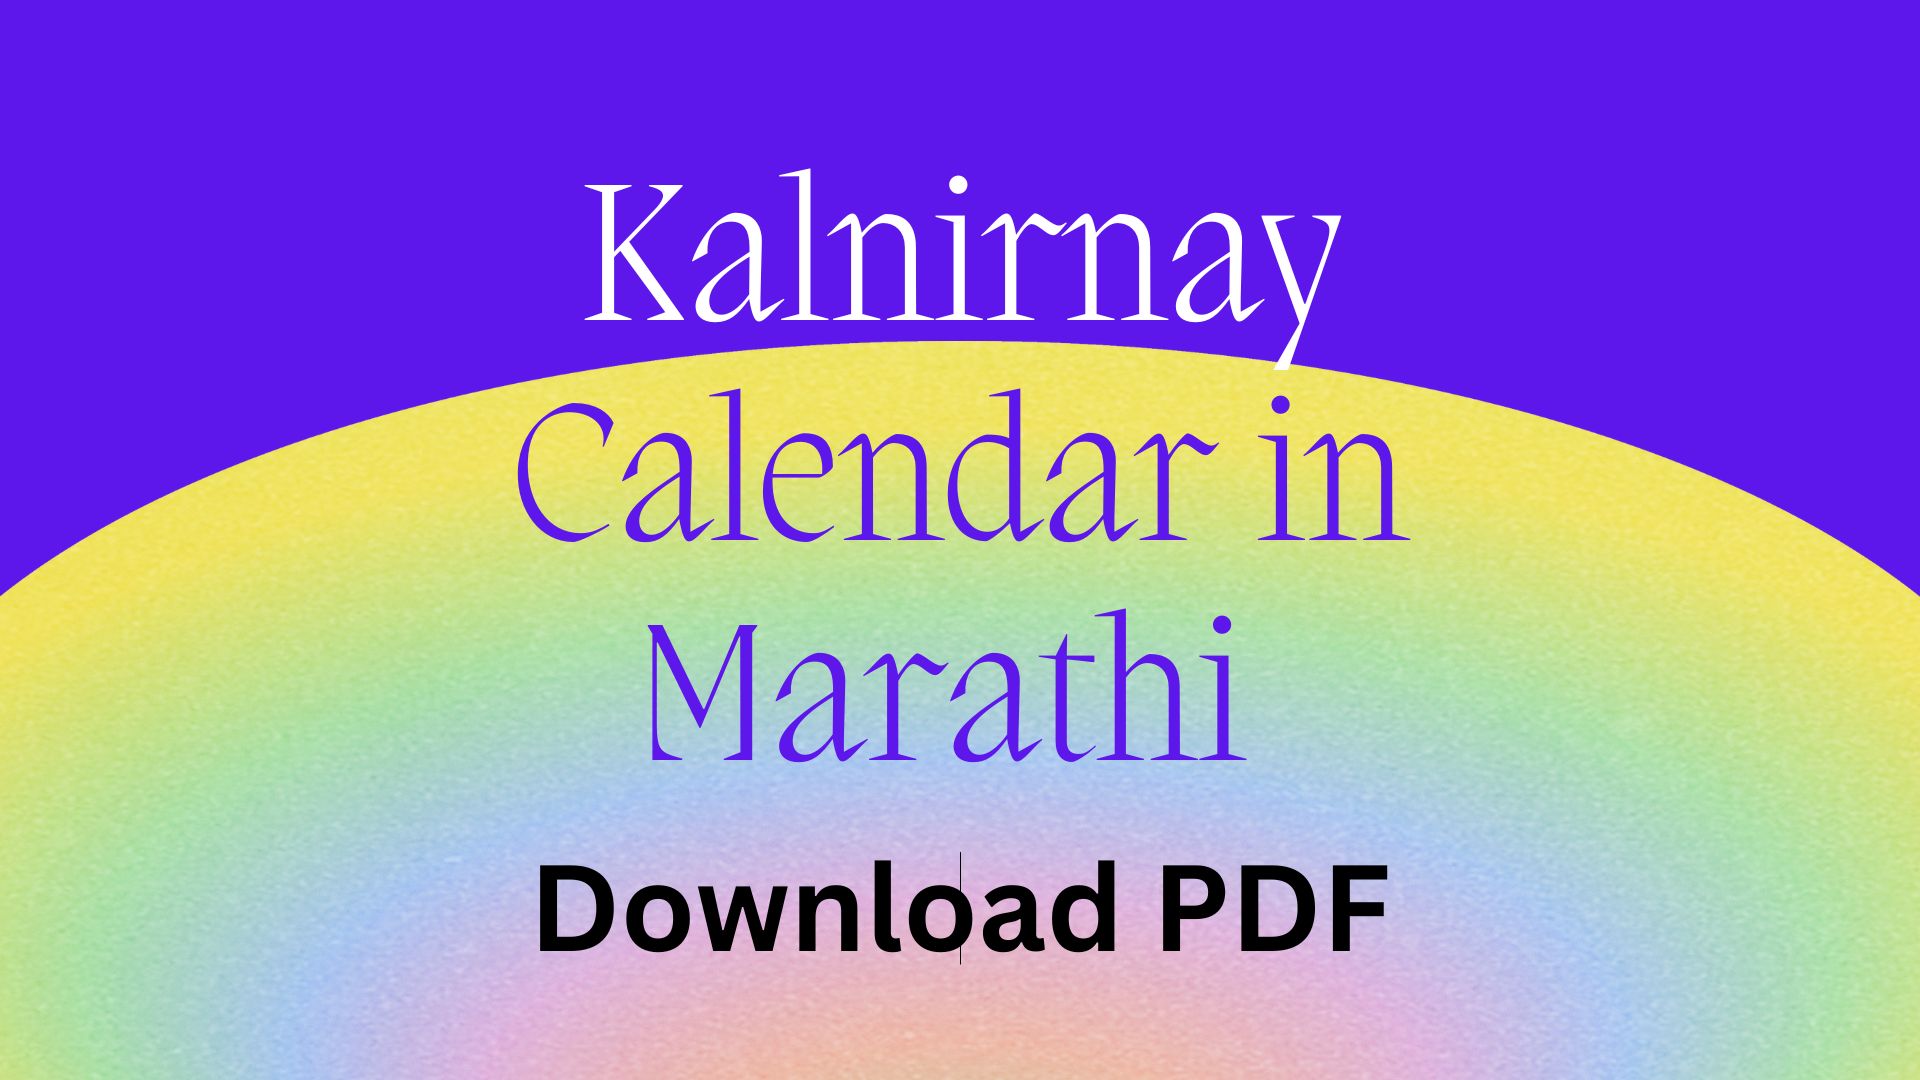 Kalnirnay Calendar PDF in Marathi Download